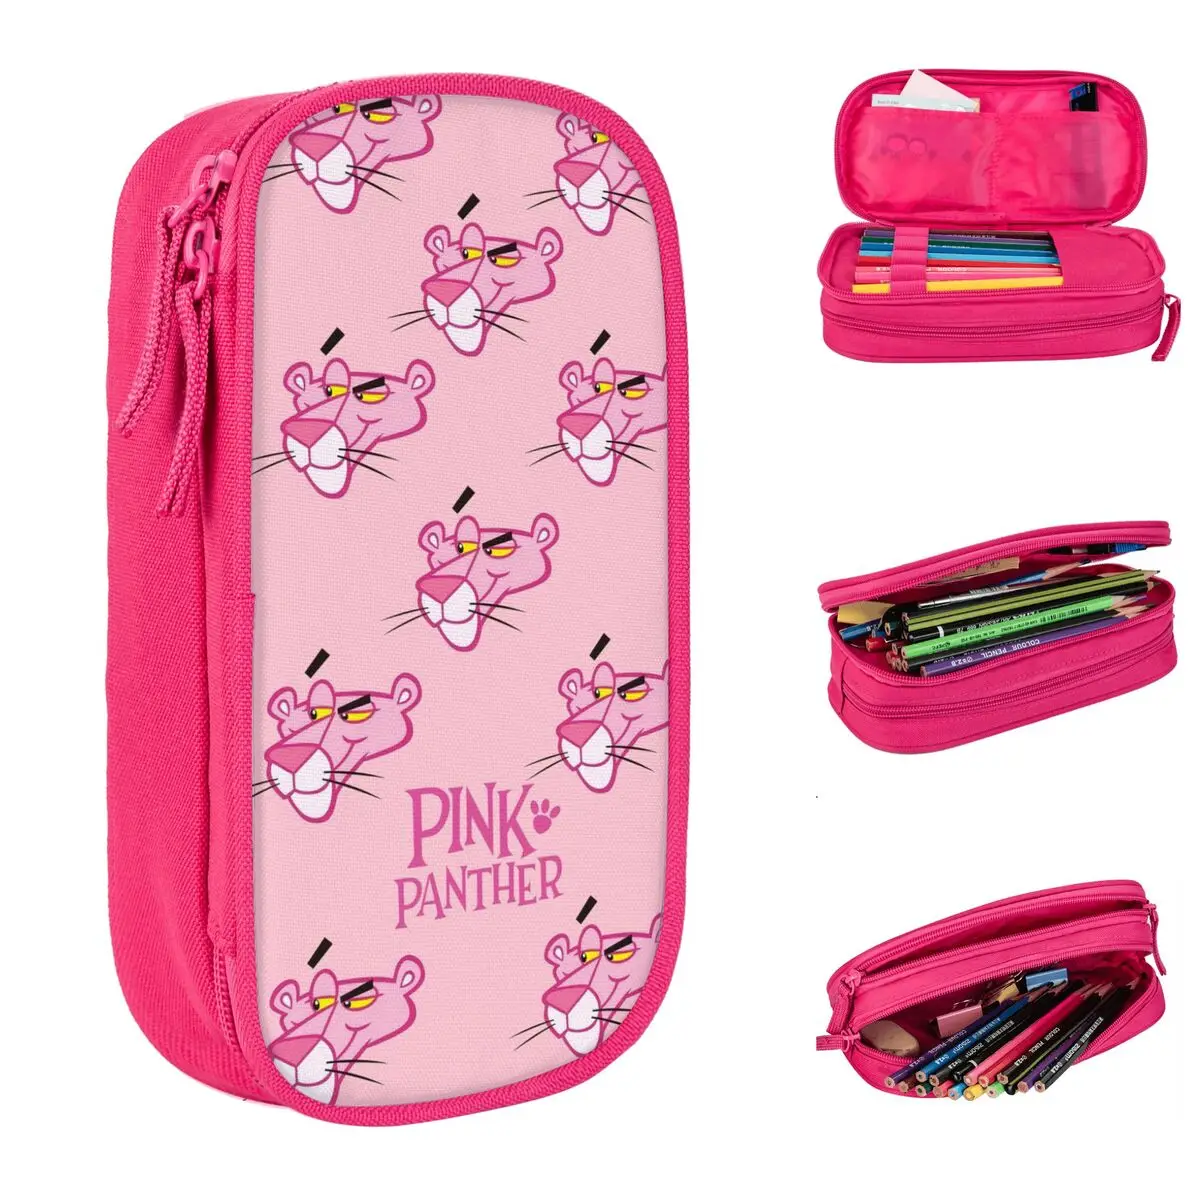 

Пеналы с леопардовой головкой для девочек и мальчиков, Мультяшные Чехлы для ручек и карандашей с розовой пантерой, сумки для студентов и школ, косметические принадлежности